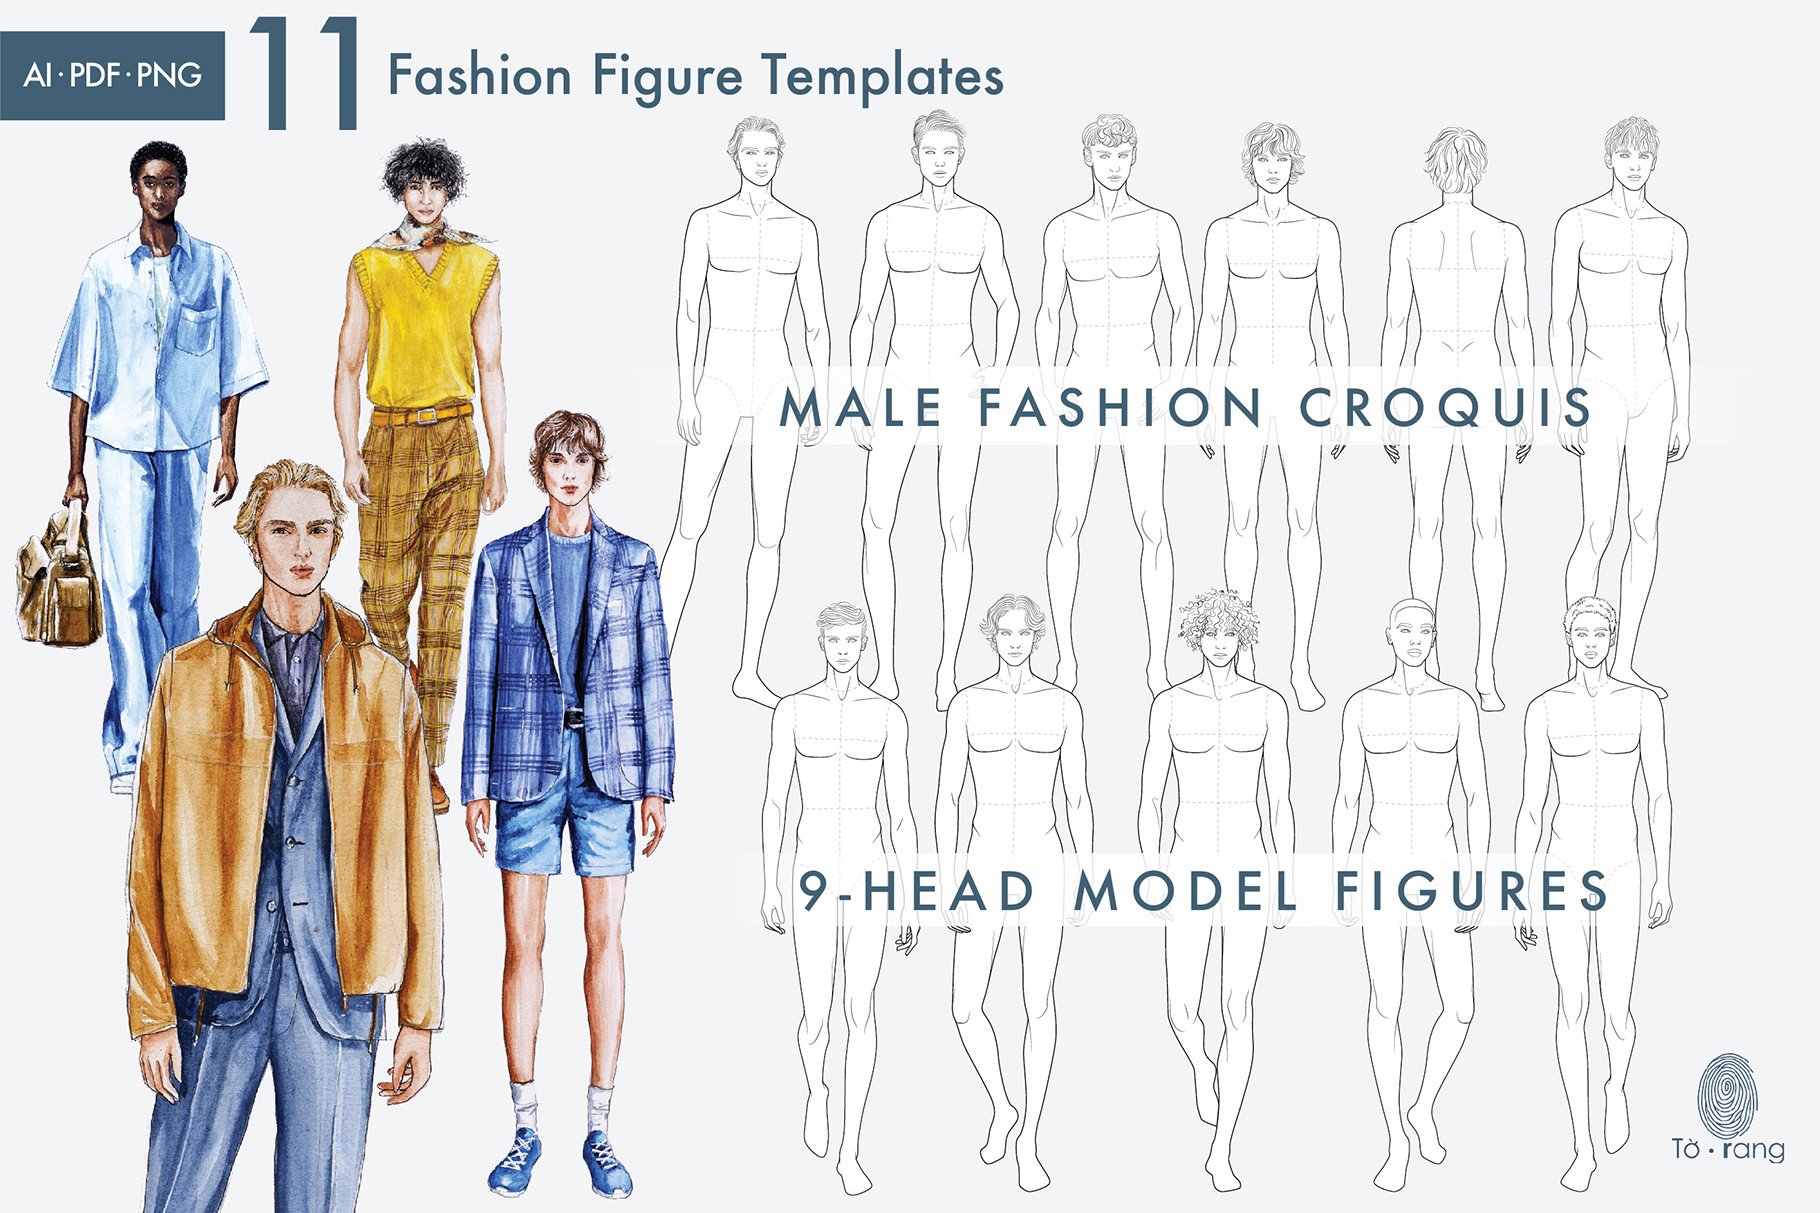 Male Fashion Figure Templates, 9-head Fashion Croquis, Relaxing Pose - Etsy  | Fashion figure templates, Fashion figure drawing, Fashion figures